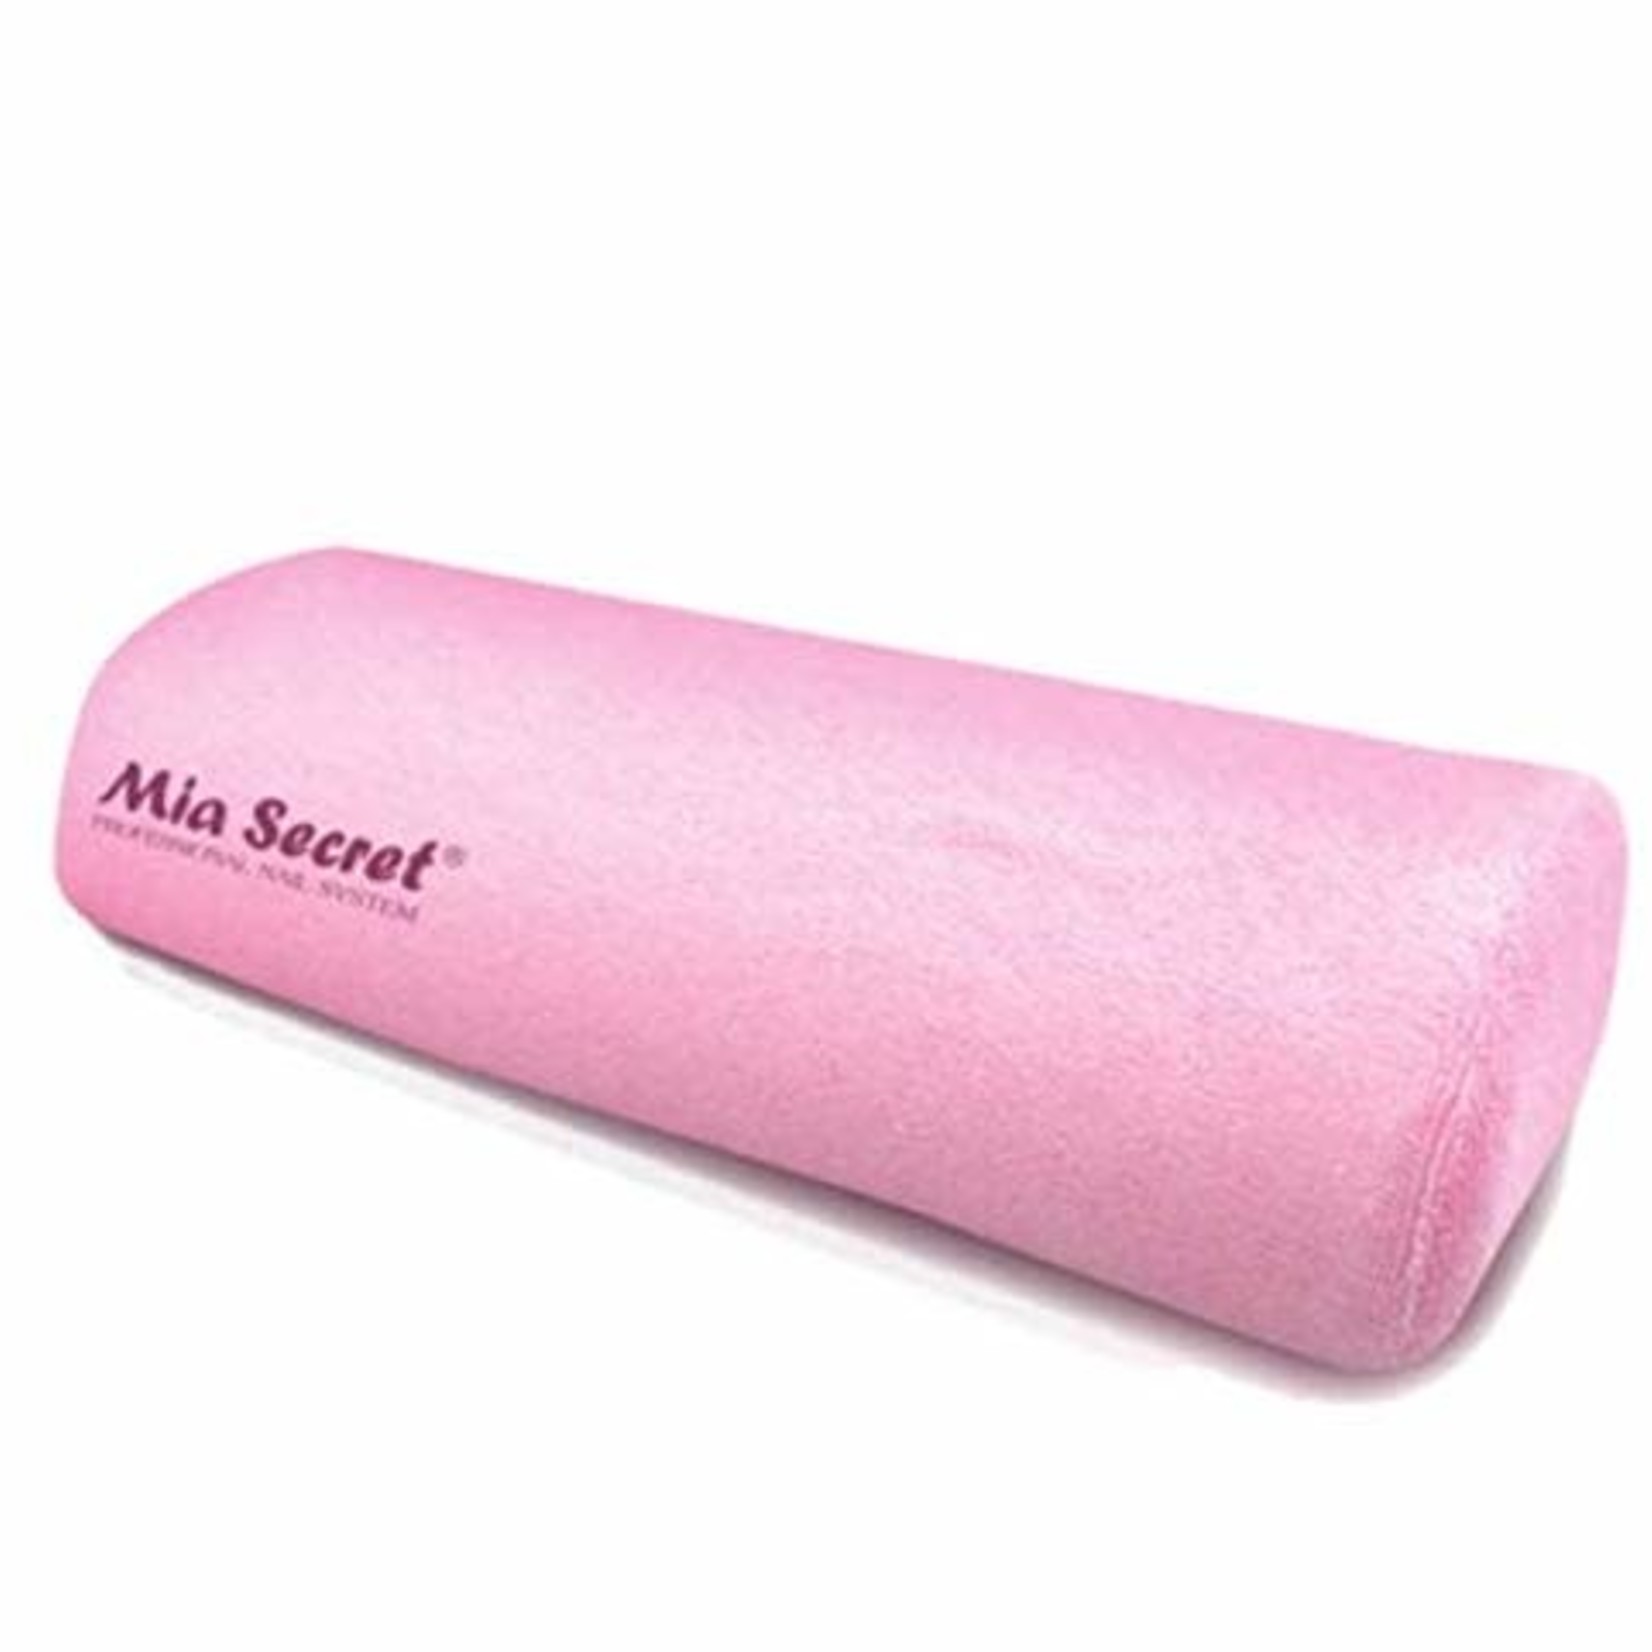 Mia Secret Mia Secret - Soft Hand Arm Rest - Pink